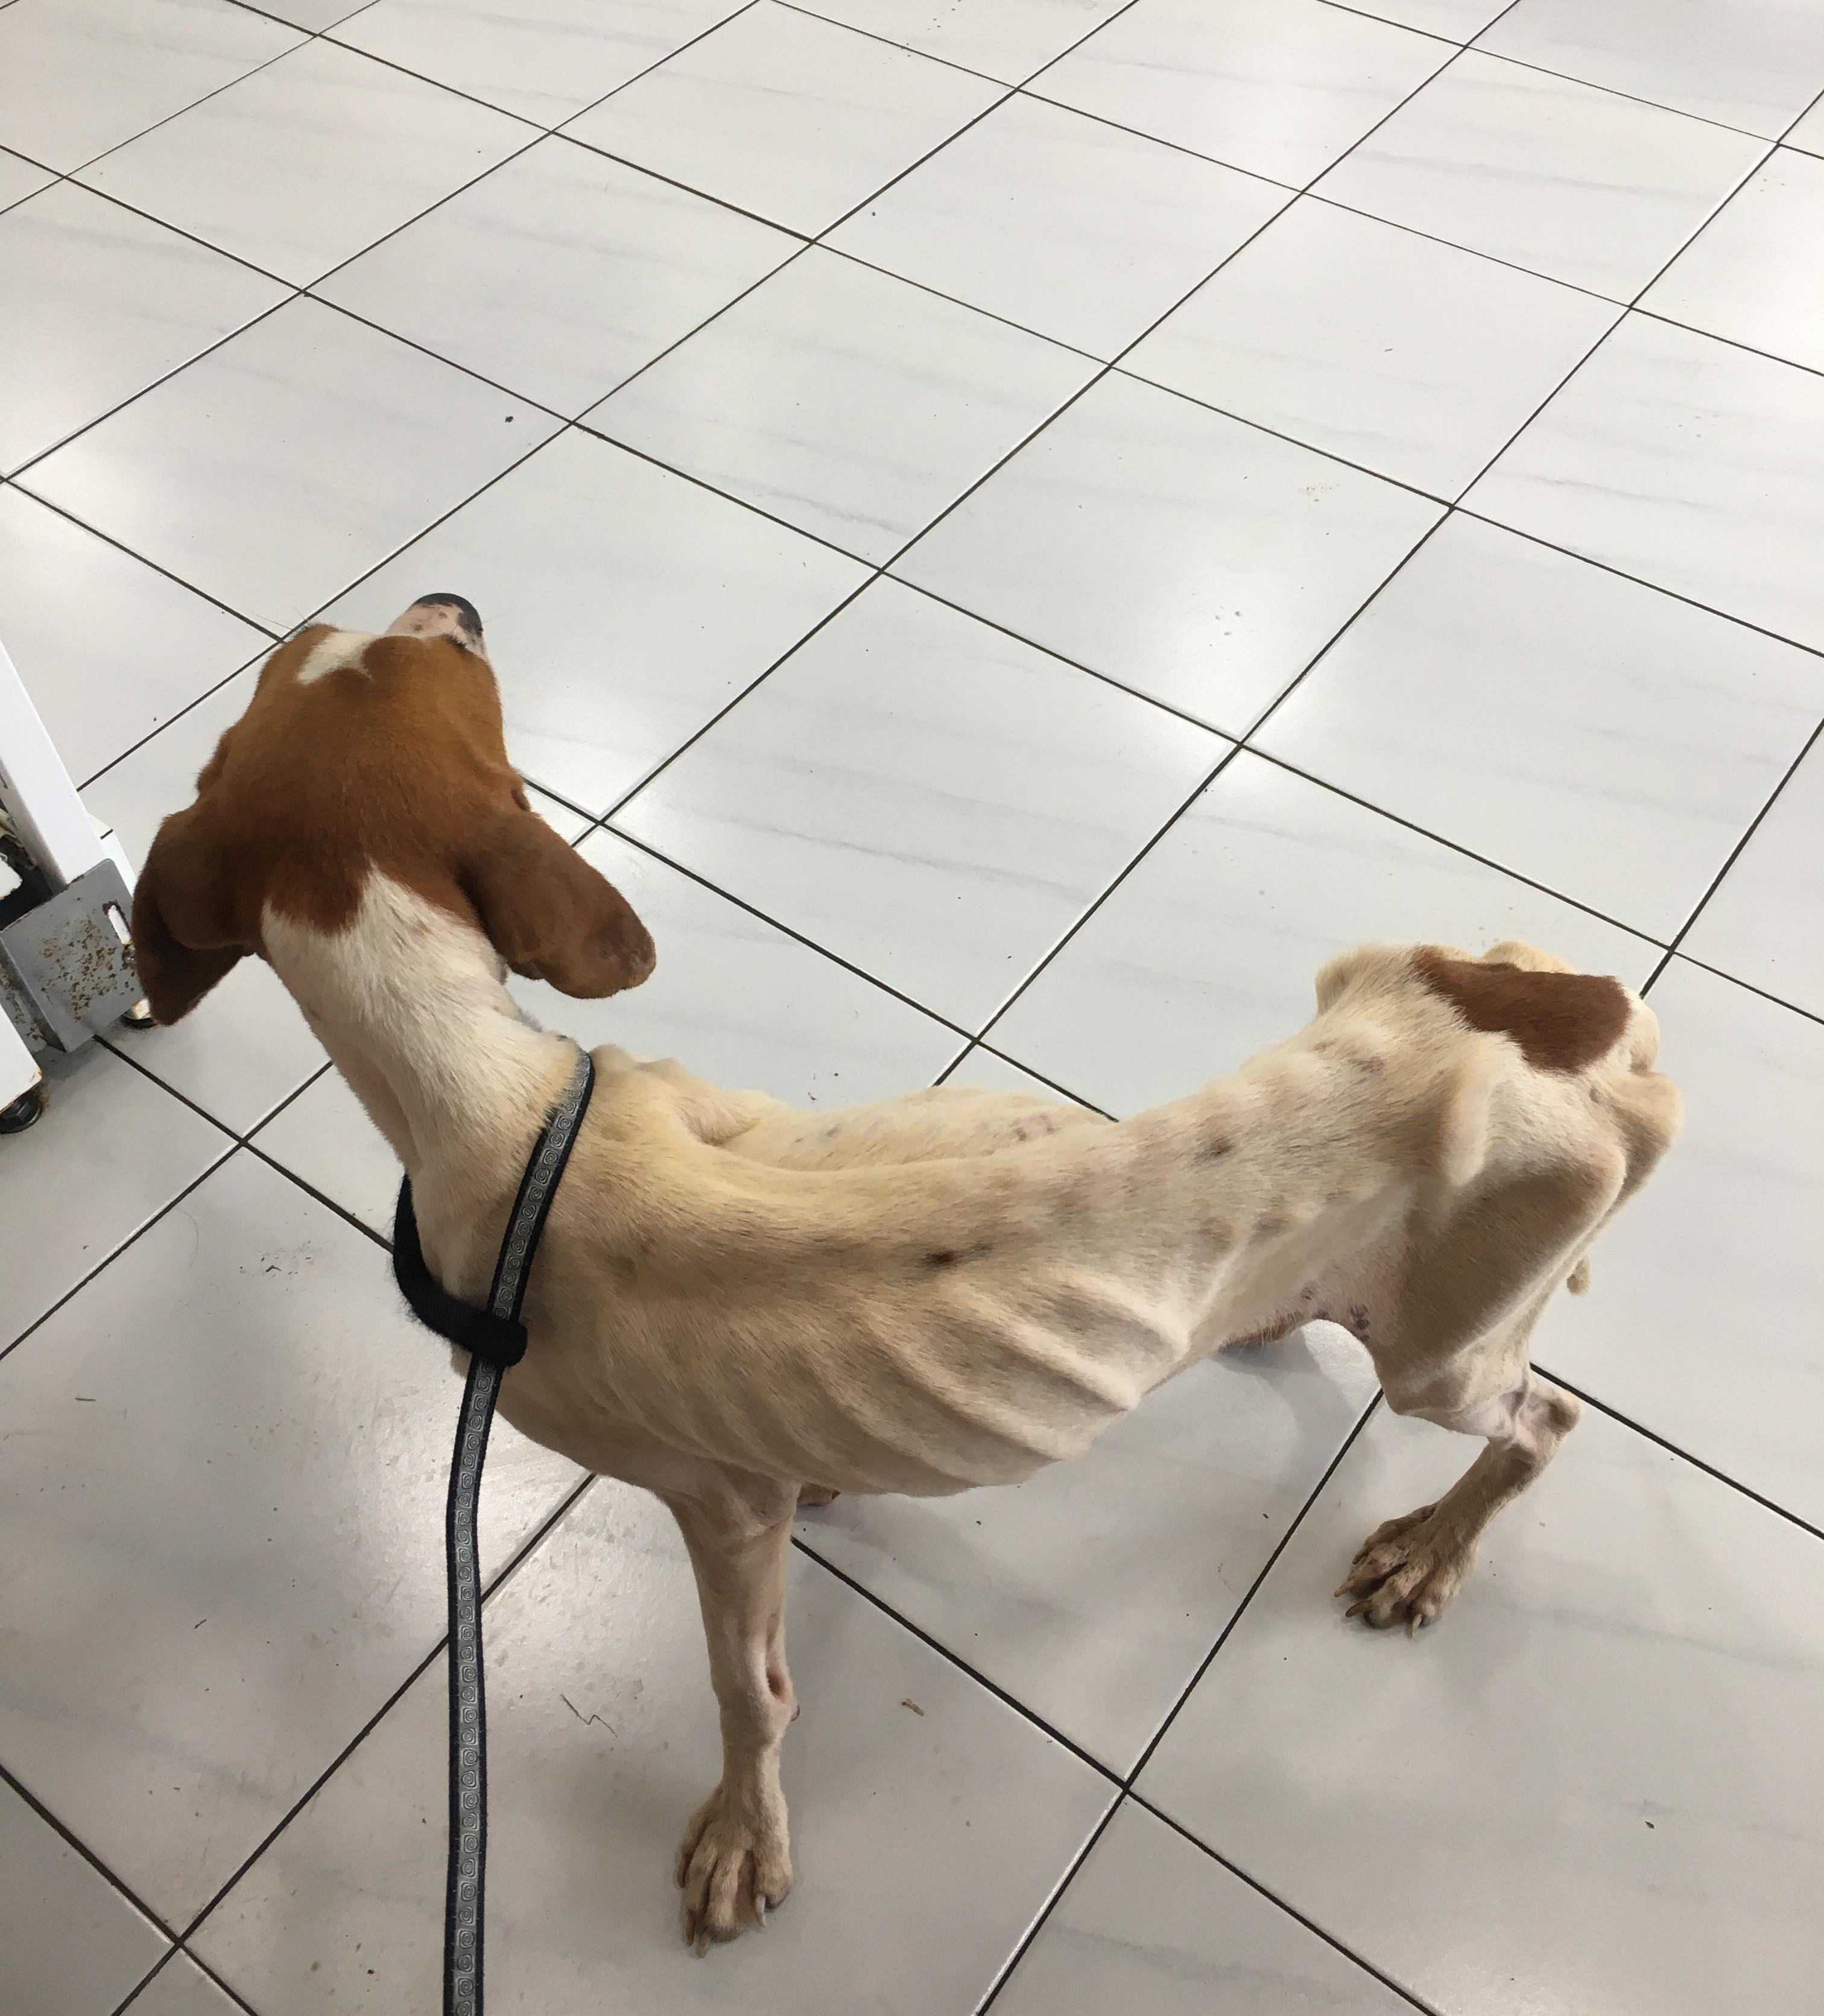 Vidéo choc de l'errance animale, une chienne se nourrit sur un cadavre